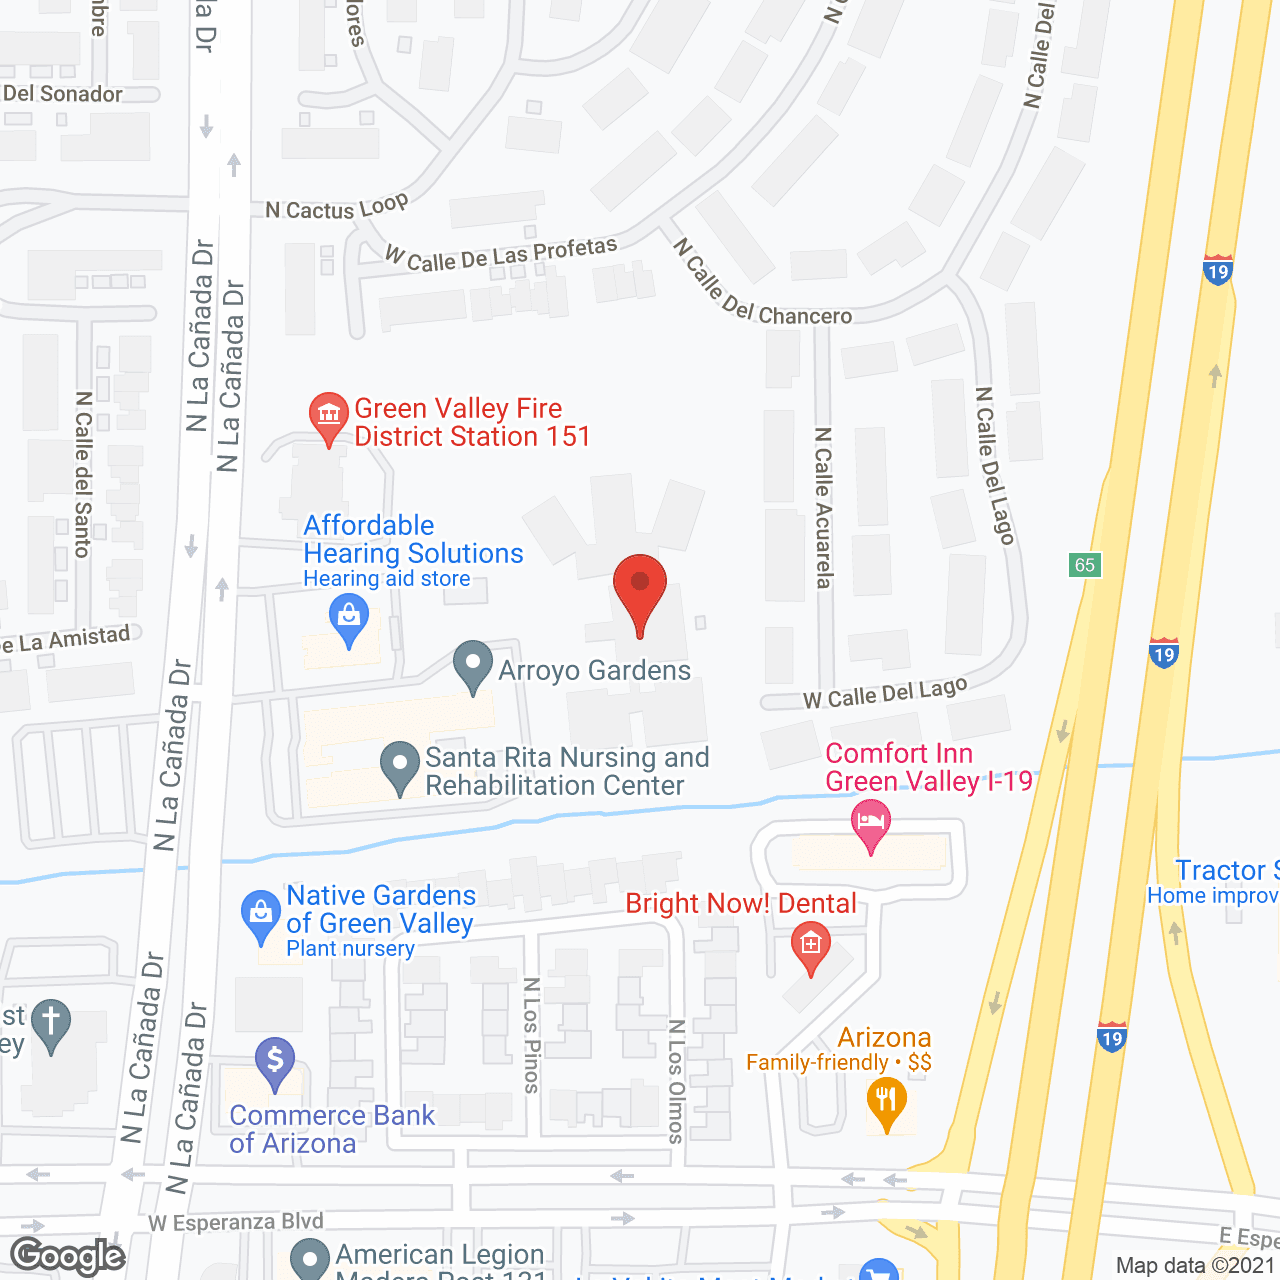 Arroyo Gardens in google map